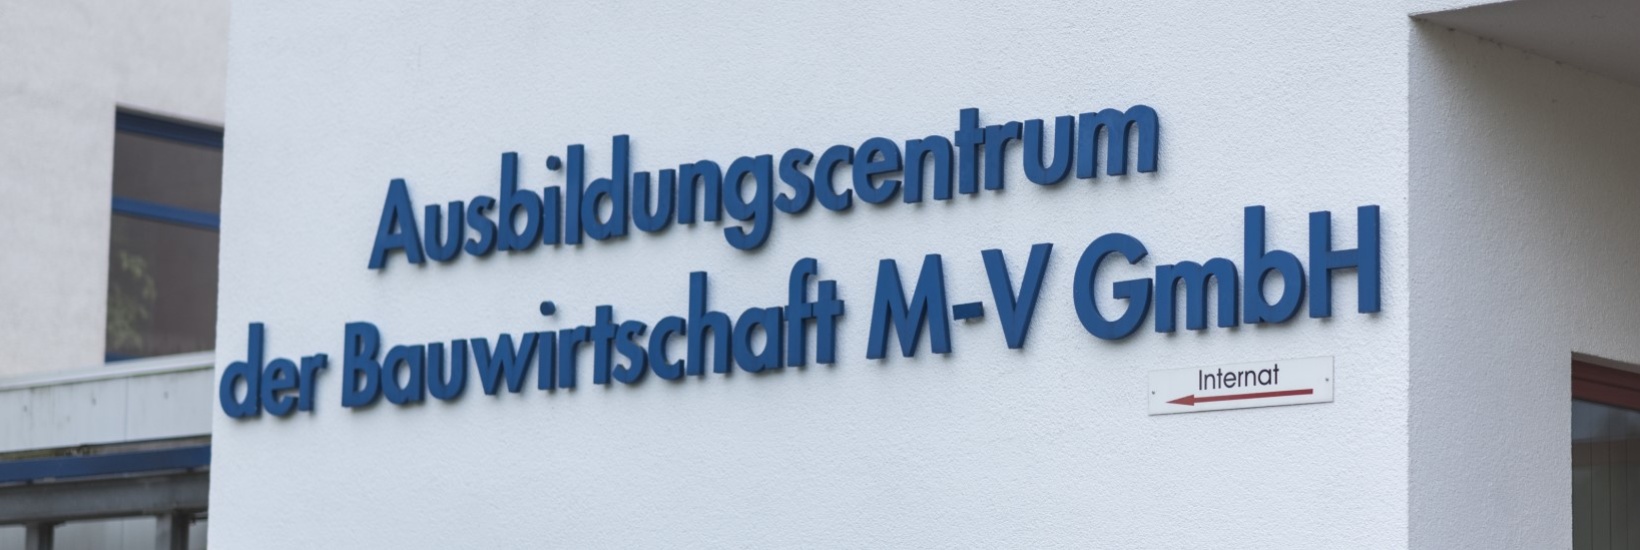 Schriftzug Ausbildungscentrum der Bauwirtschaft M-V GmbH an Hauswand